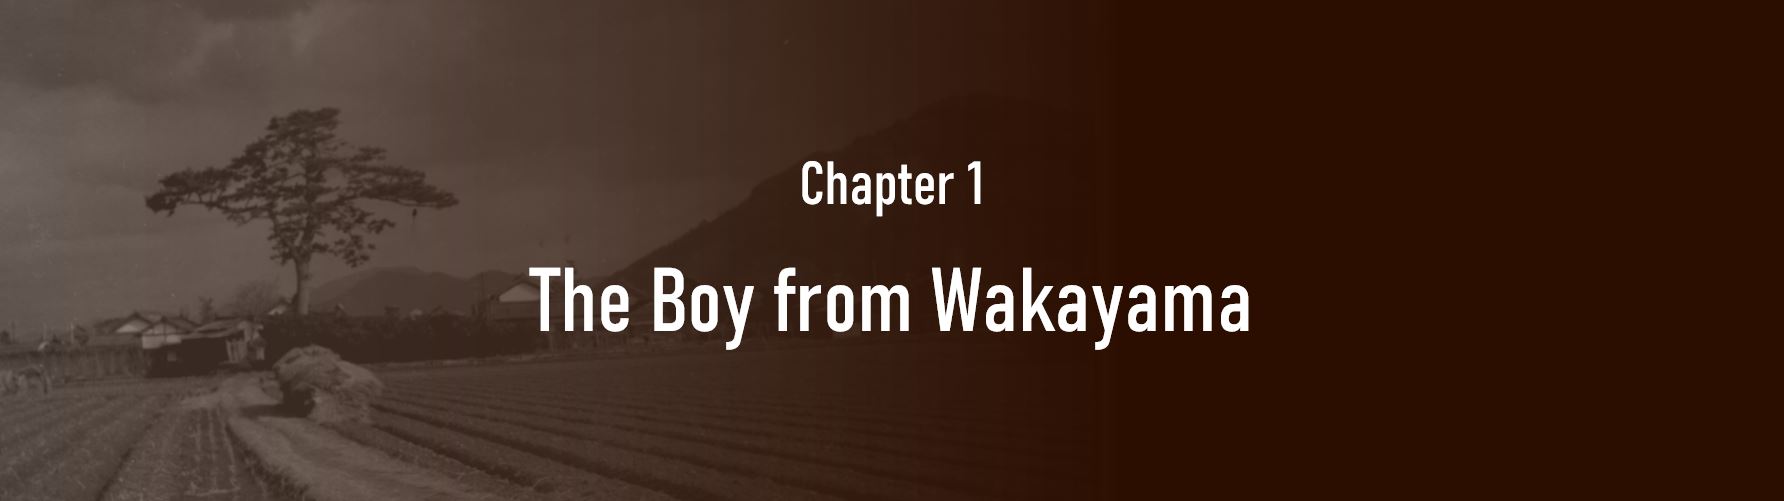 Chapter 1. The Boy from Wakayama